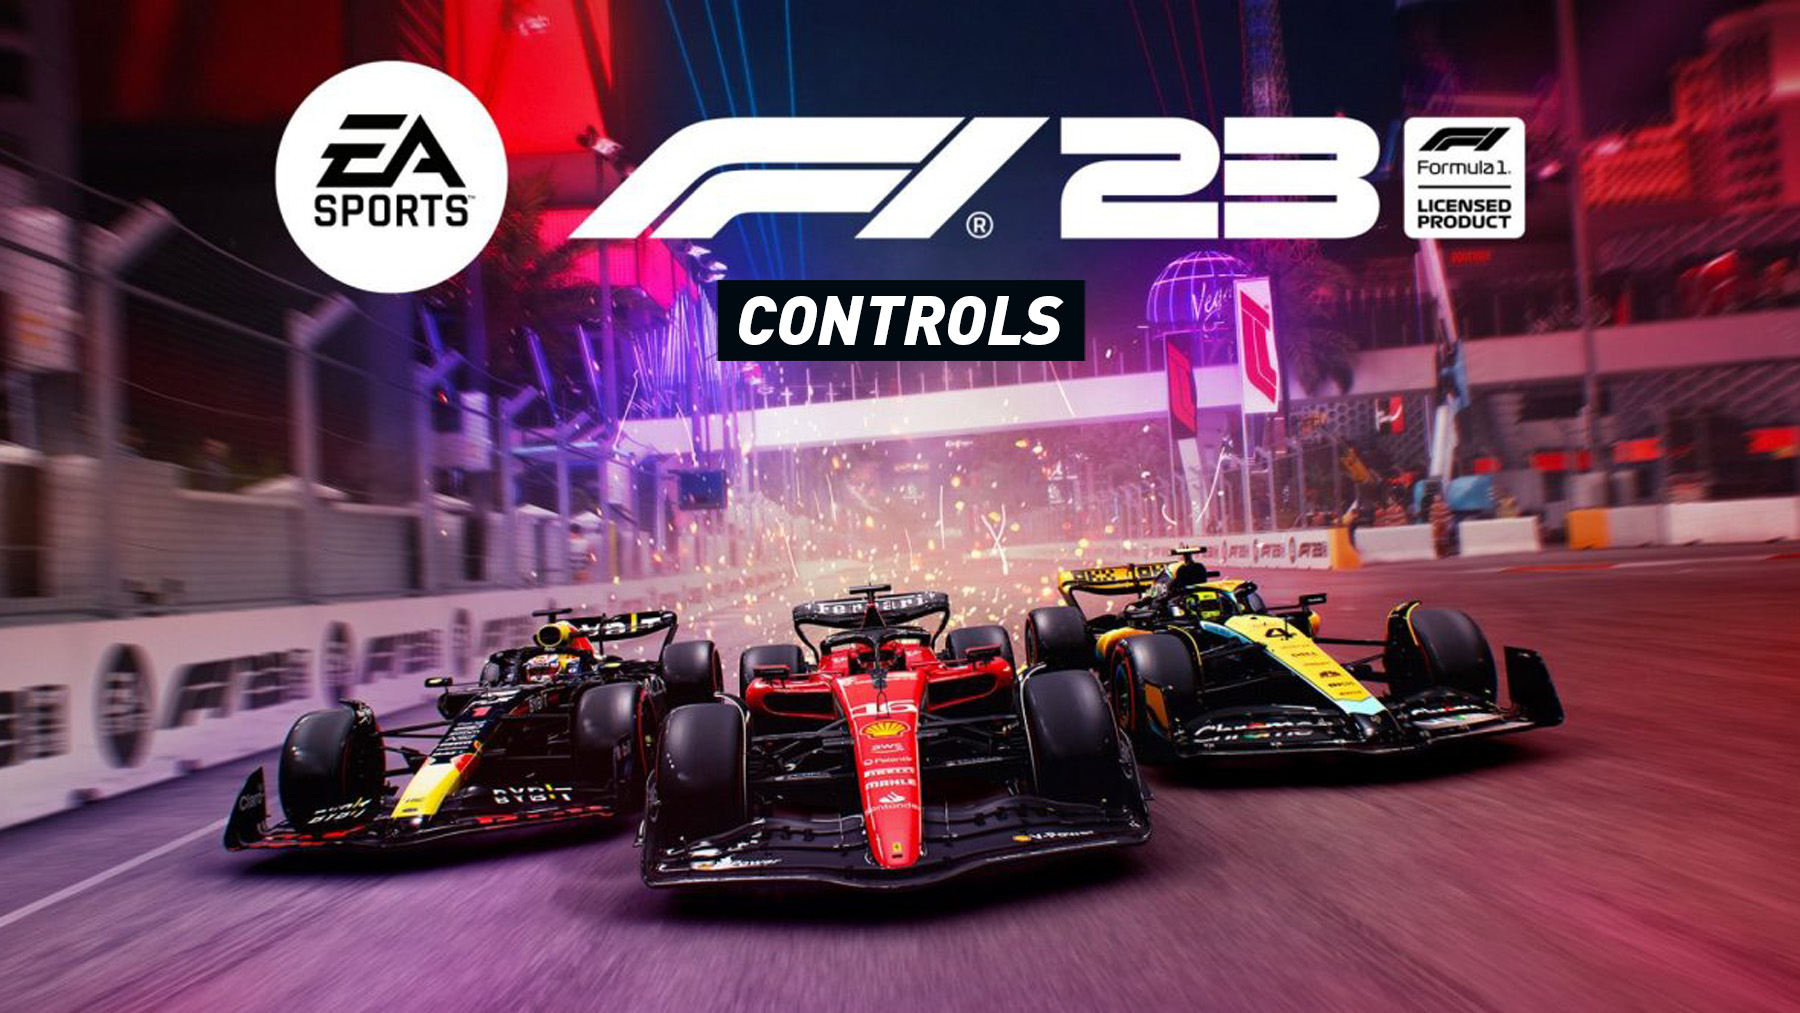 F1 23 – Controls